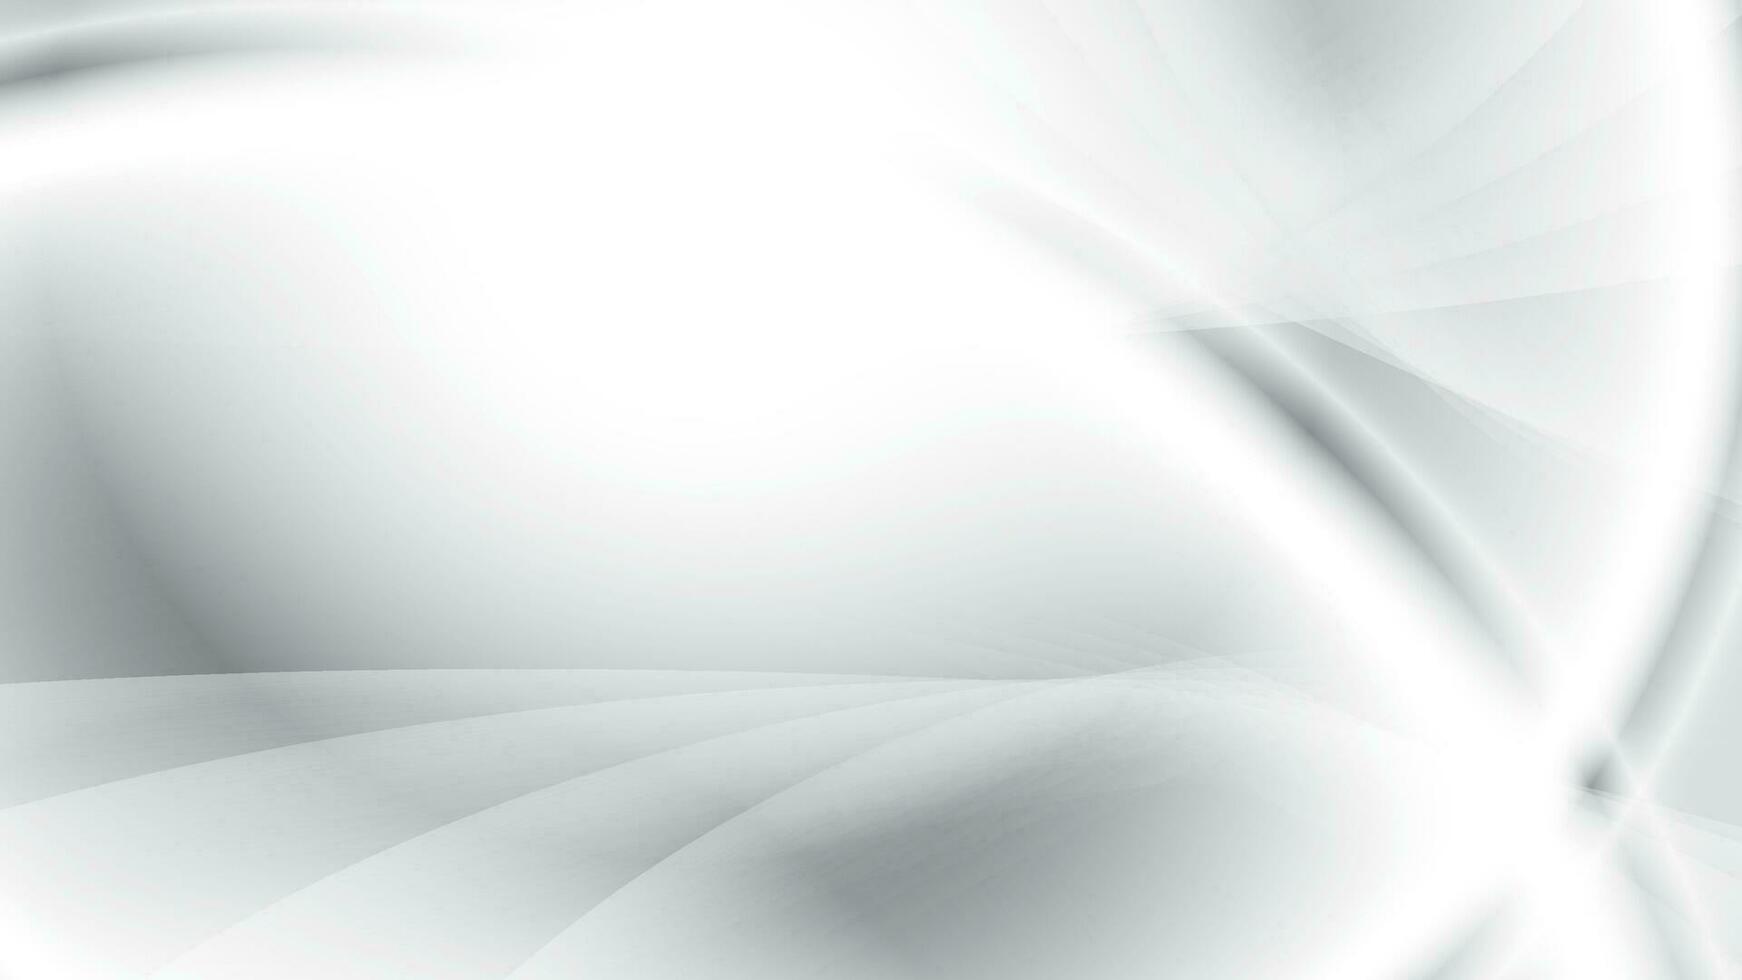 abstrakt Weiß und grau Farbe Hintergrund mit geometrisch runden Form. Vektor Illustration.